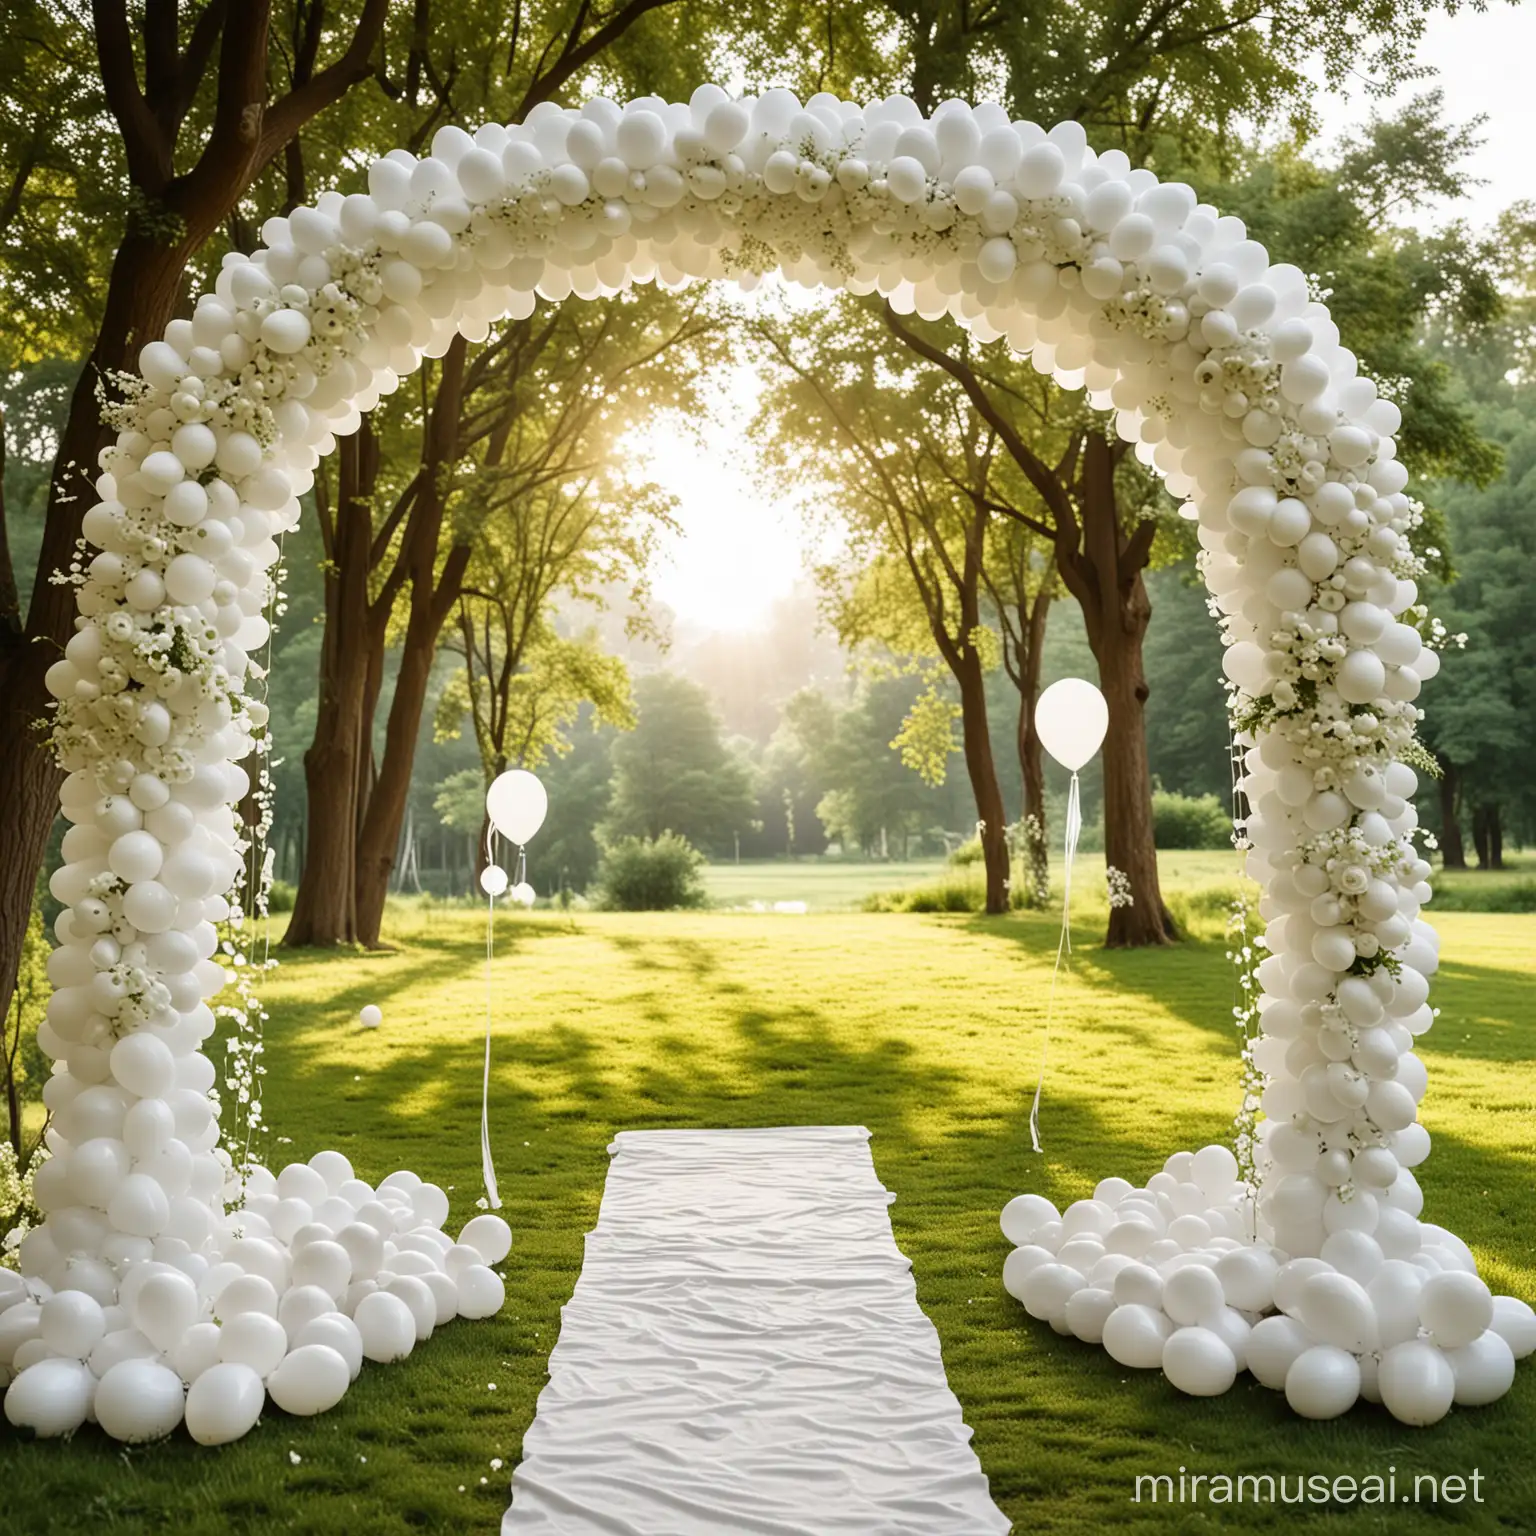 arche de mariage tres blanc avec des ballons, pour ceremonie de mariage, posé sur un sol tres verdoyant avec la lumiere du soleil